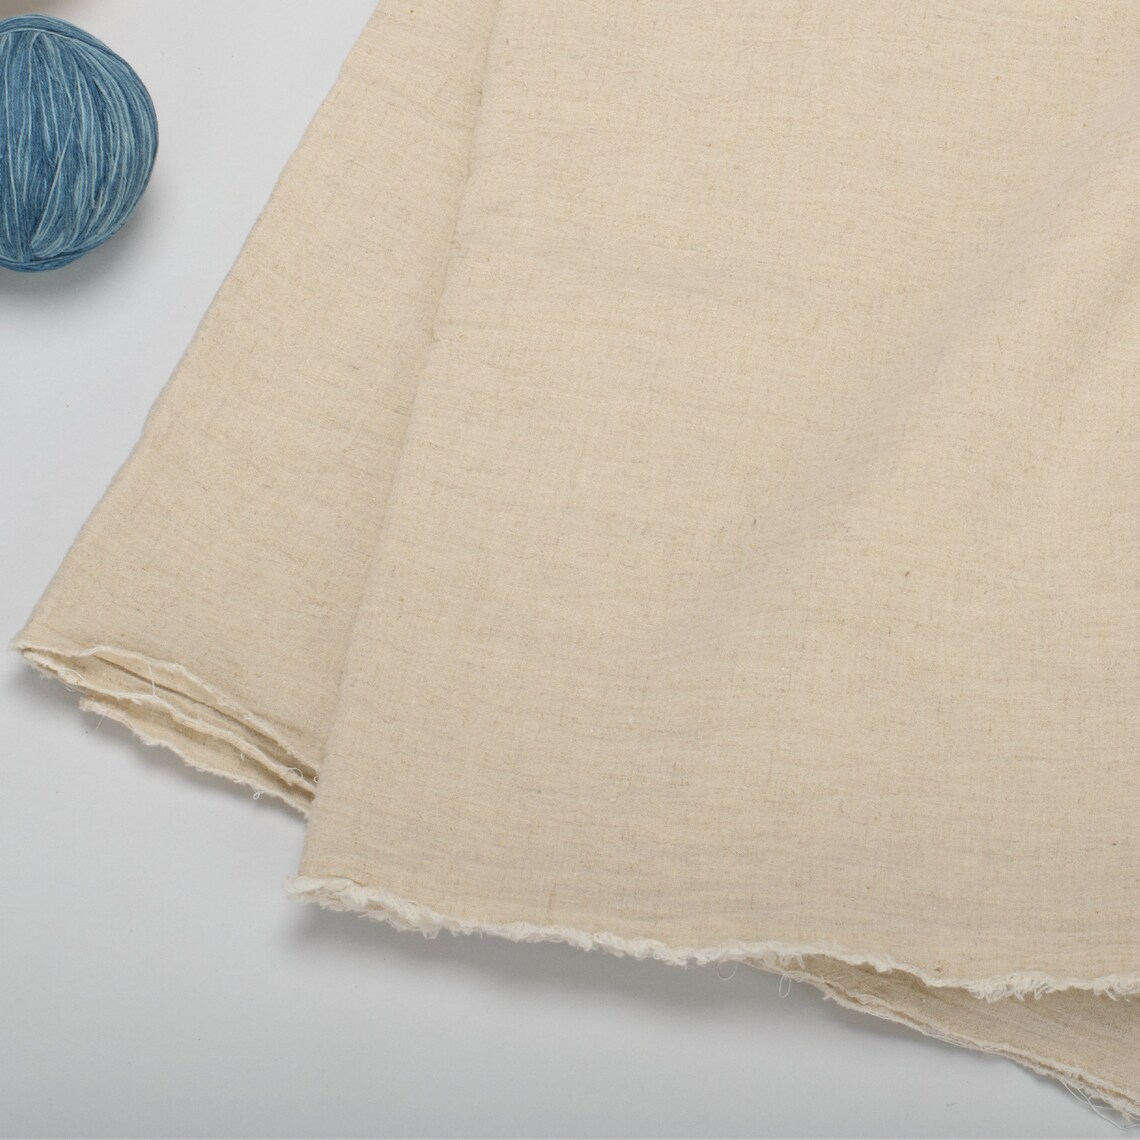 Flat Natural Linen Fabric the Classic Natural Linen Blend, Plain Linen ...